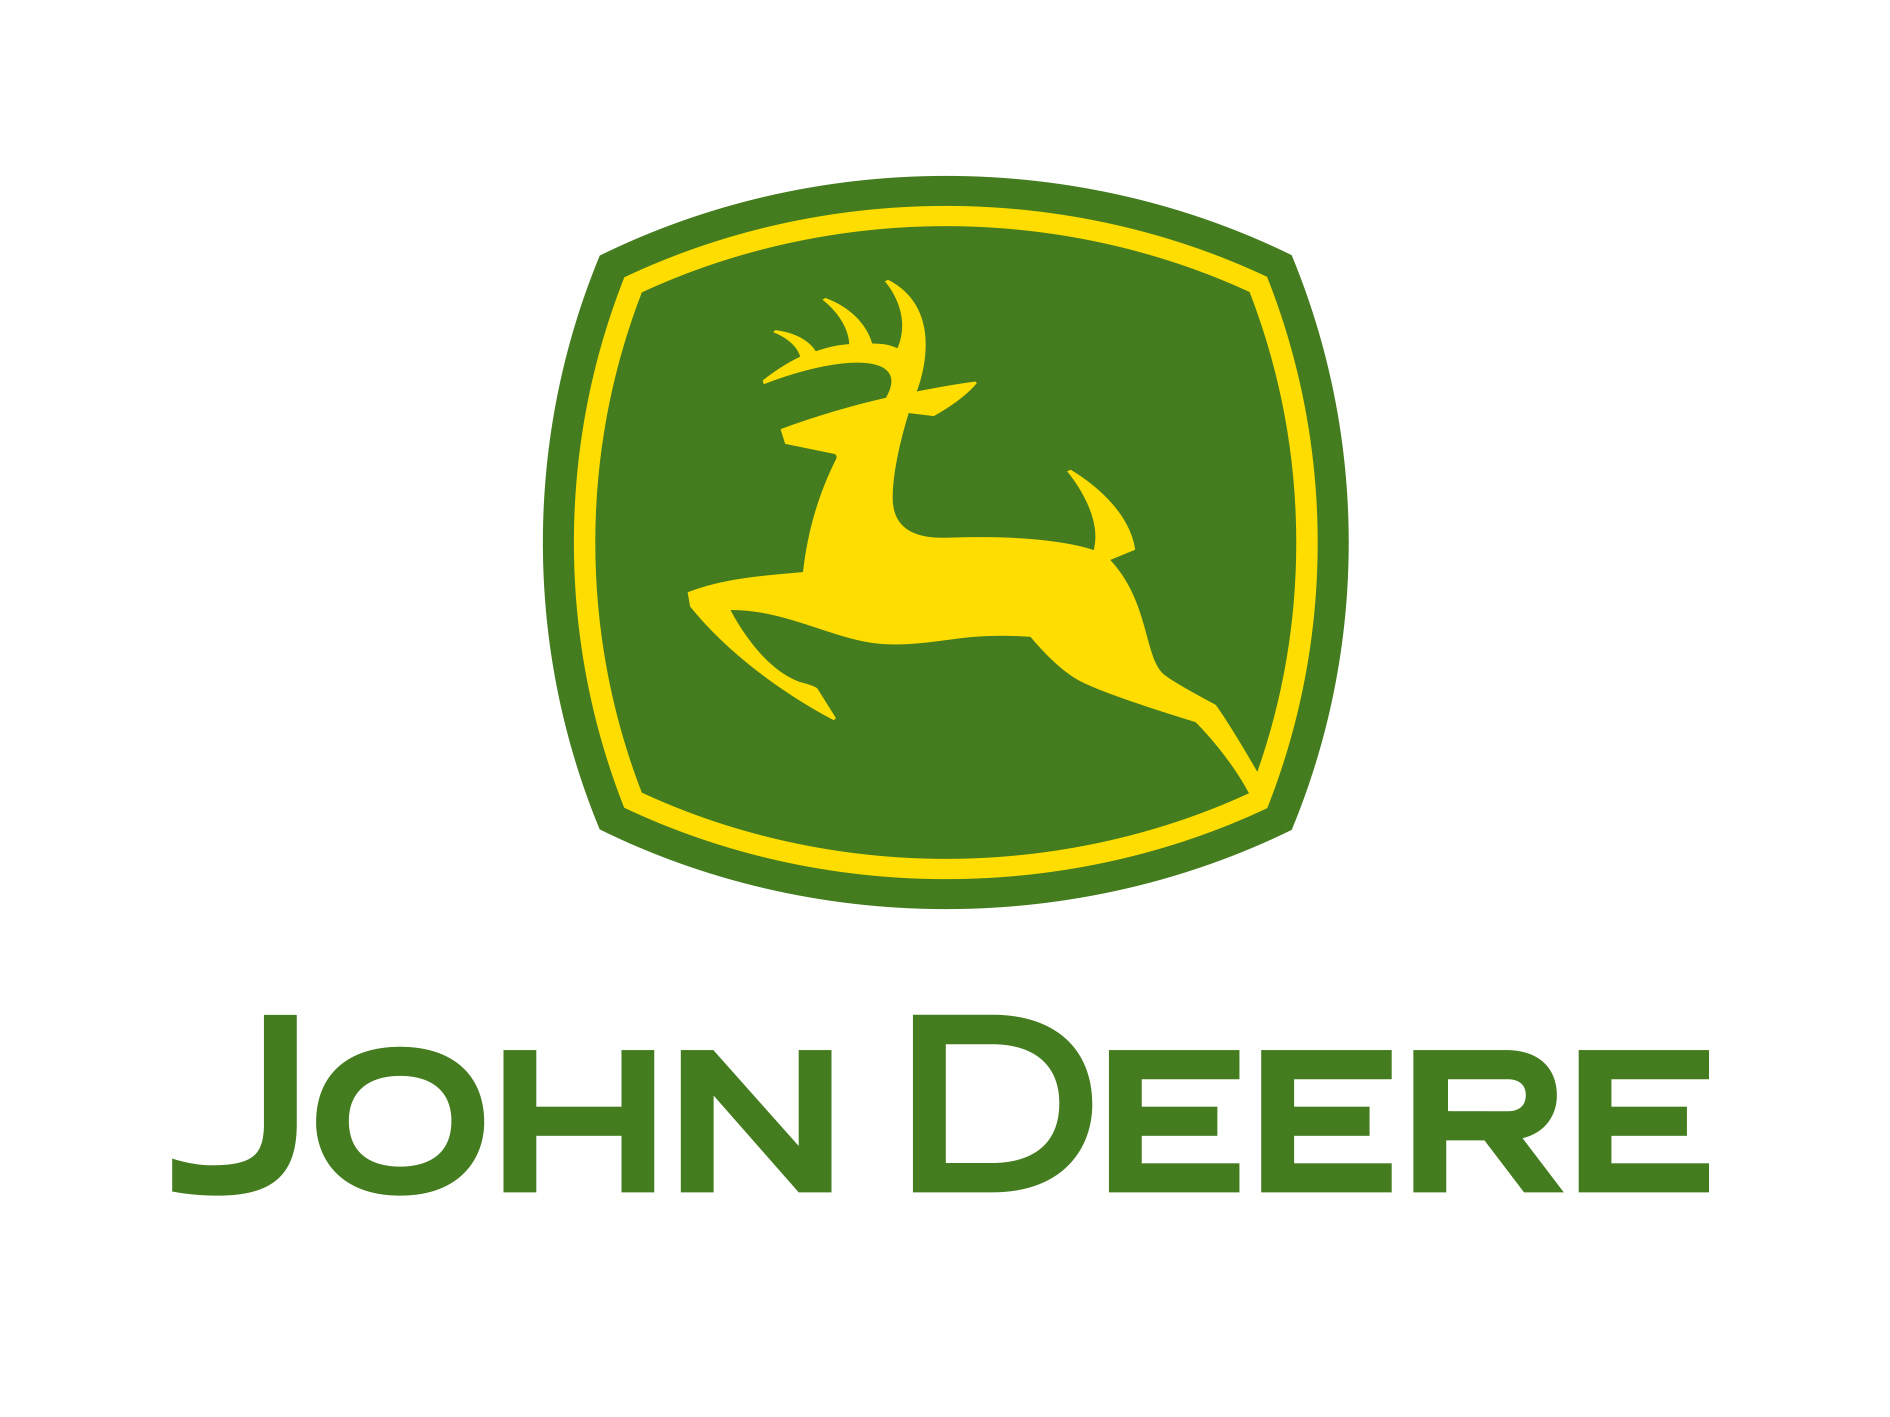 John Deere - Tractor Engine